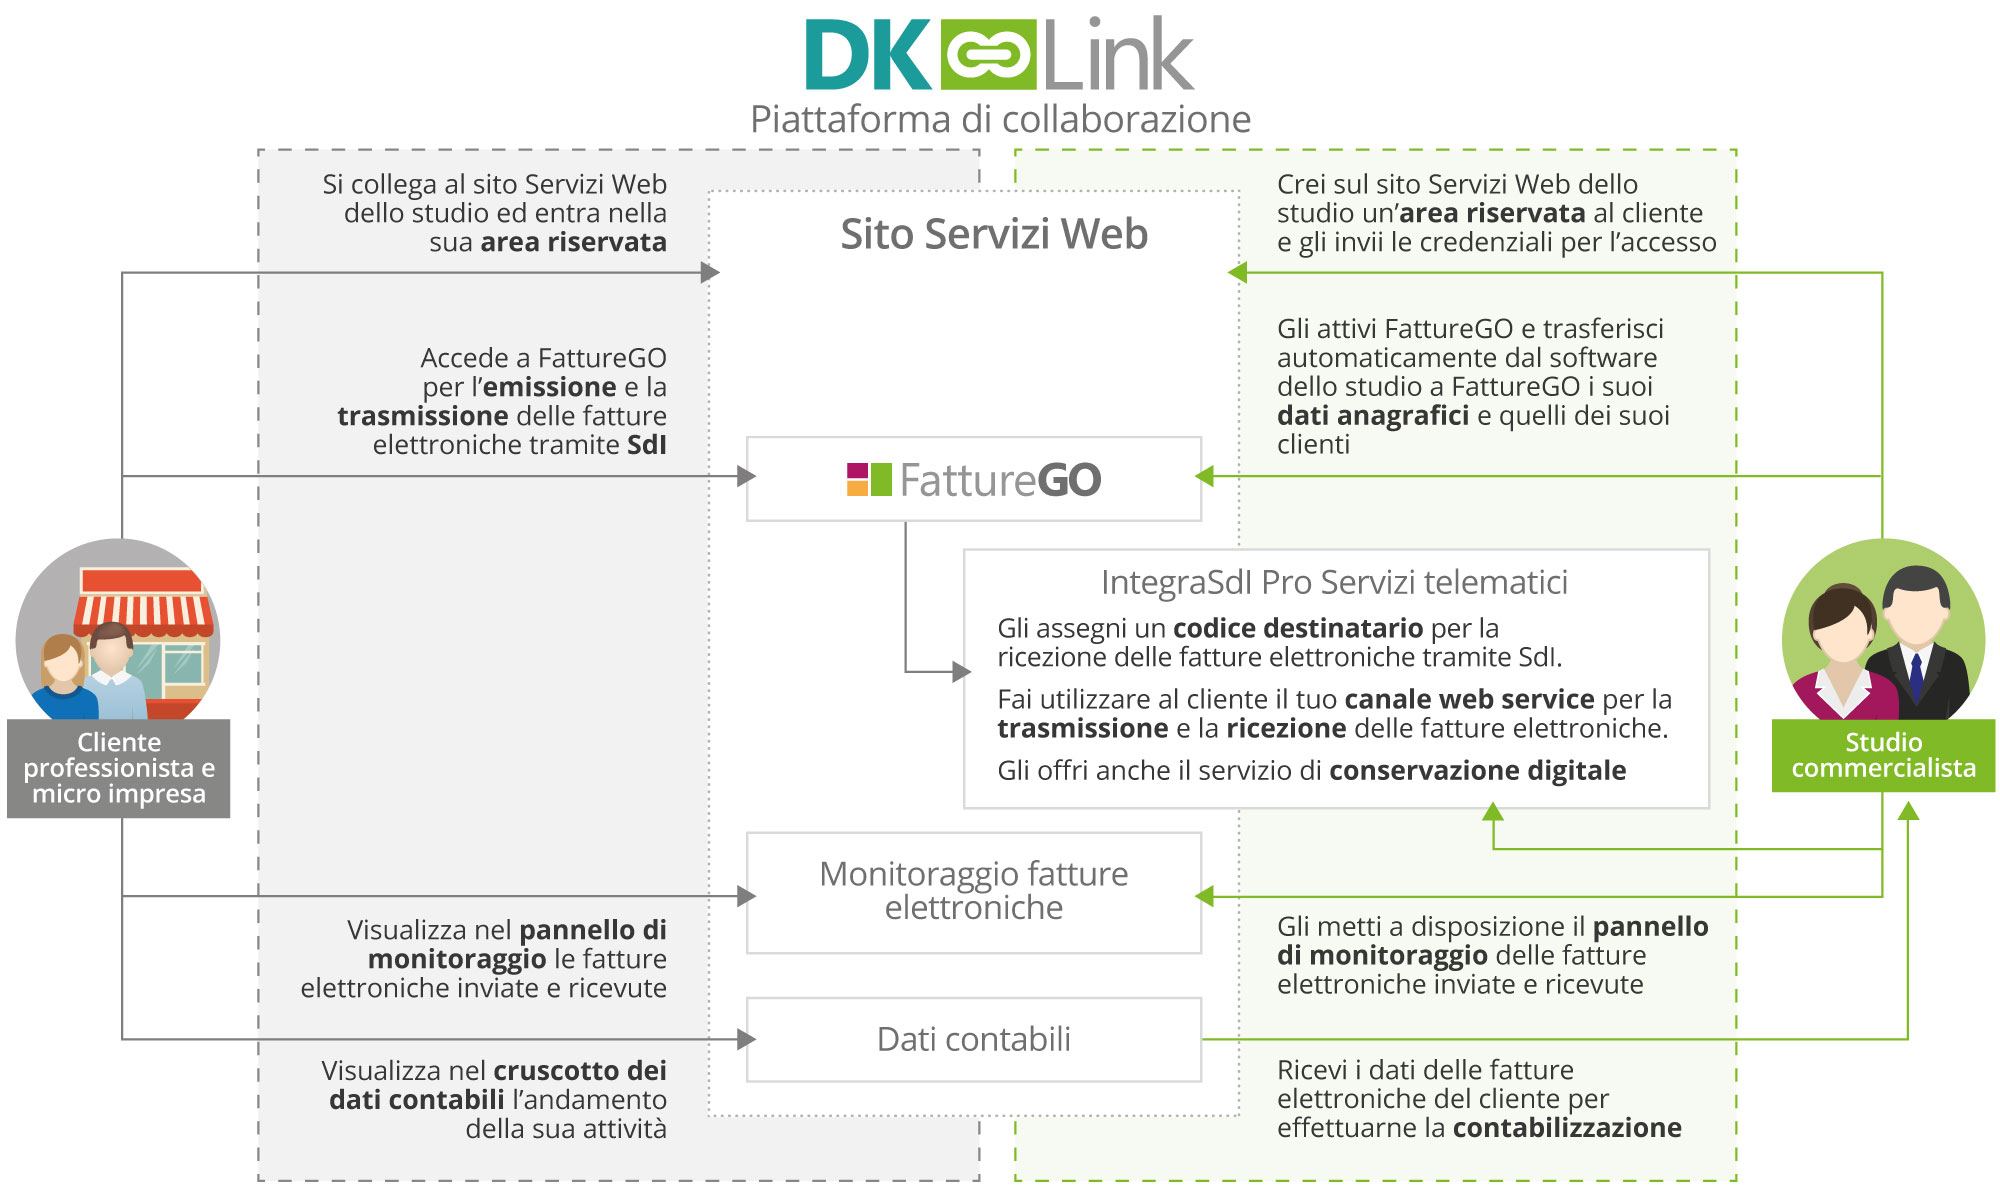 DK Link - Piattaforma di collaborazione